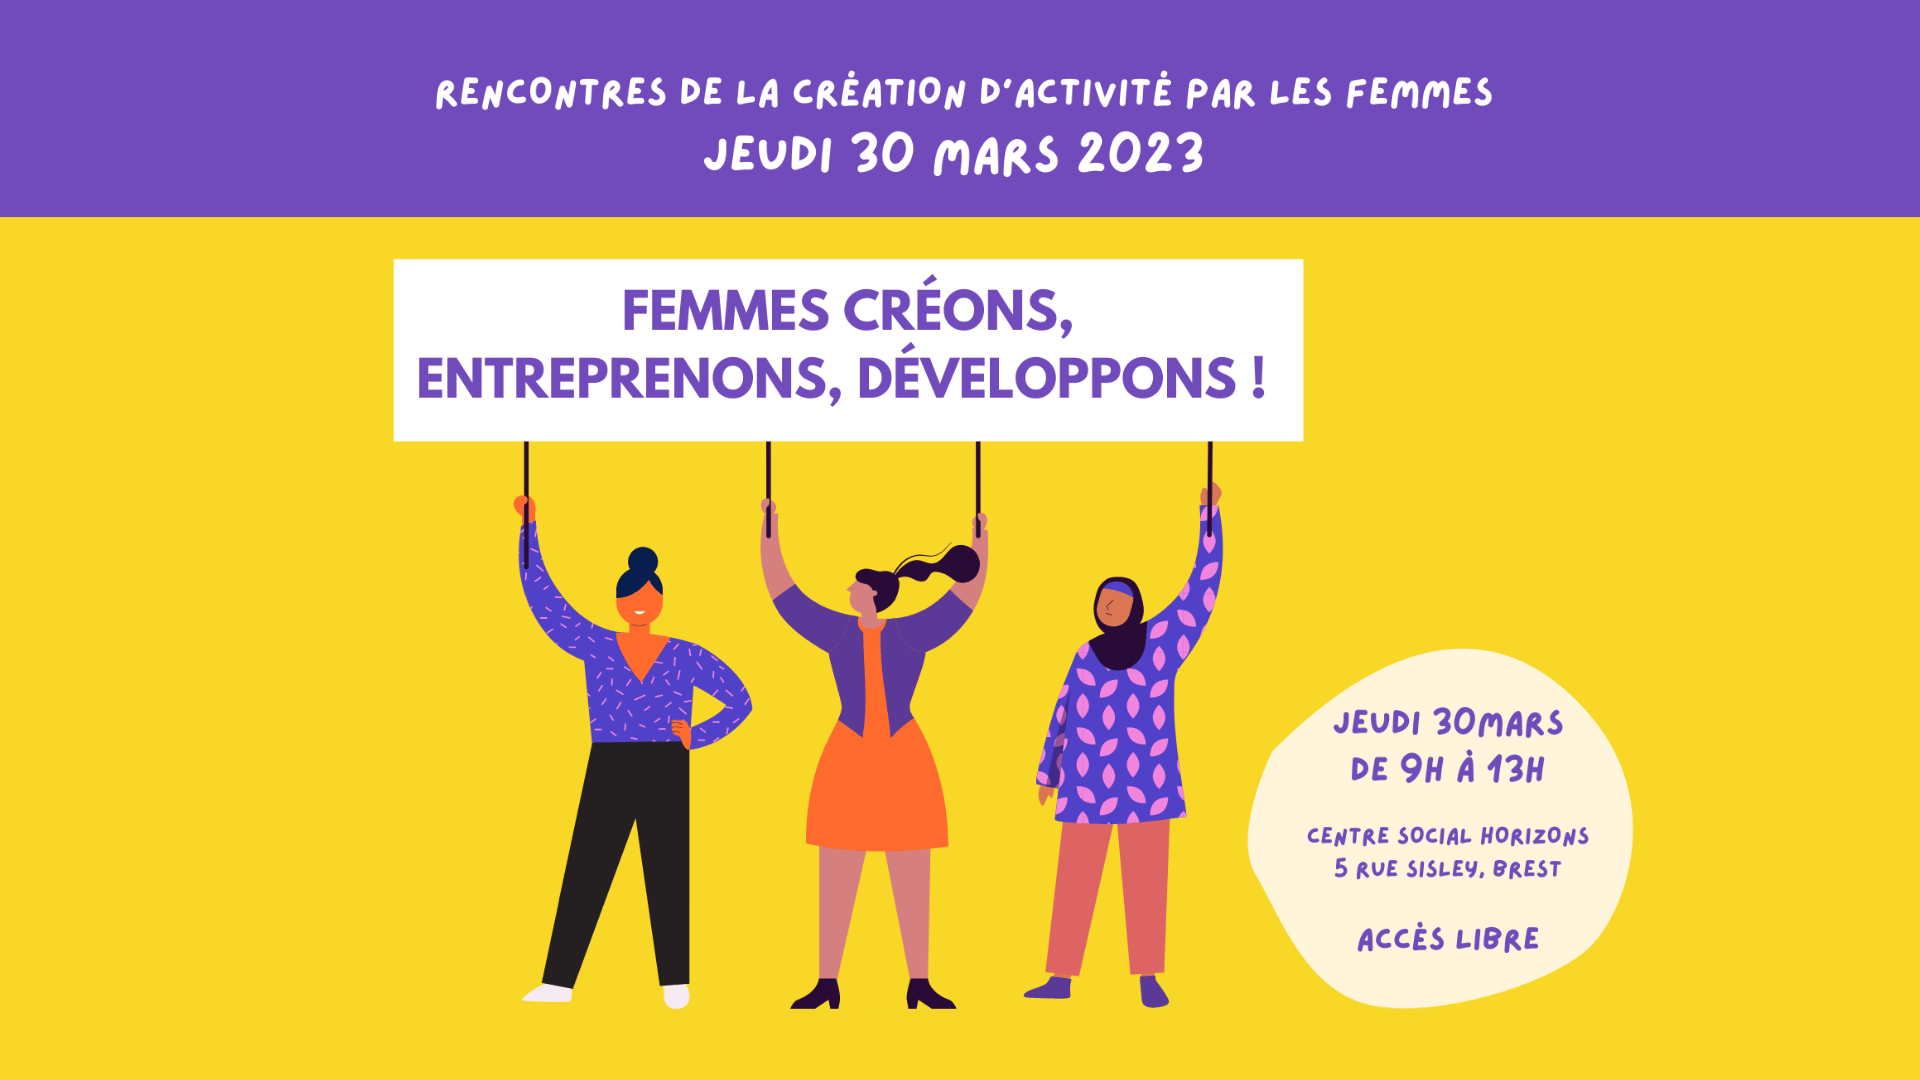 You are currently viewing Rencontres de la création d’activité par les femmes : deuxième édition le 30 mars 2023